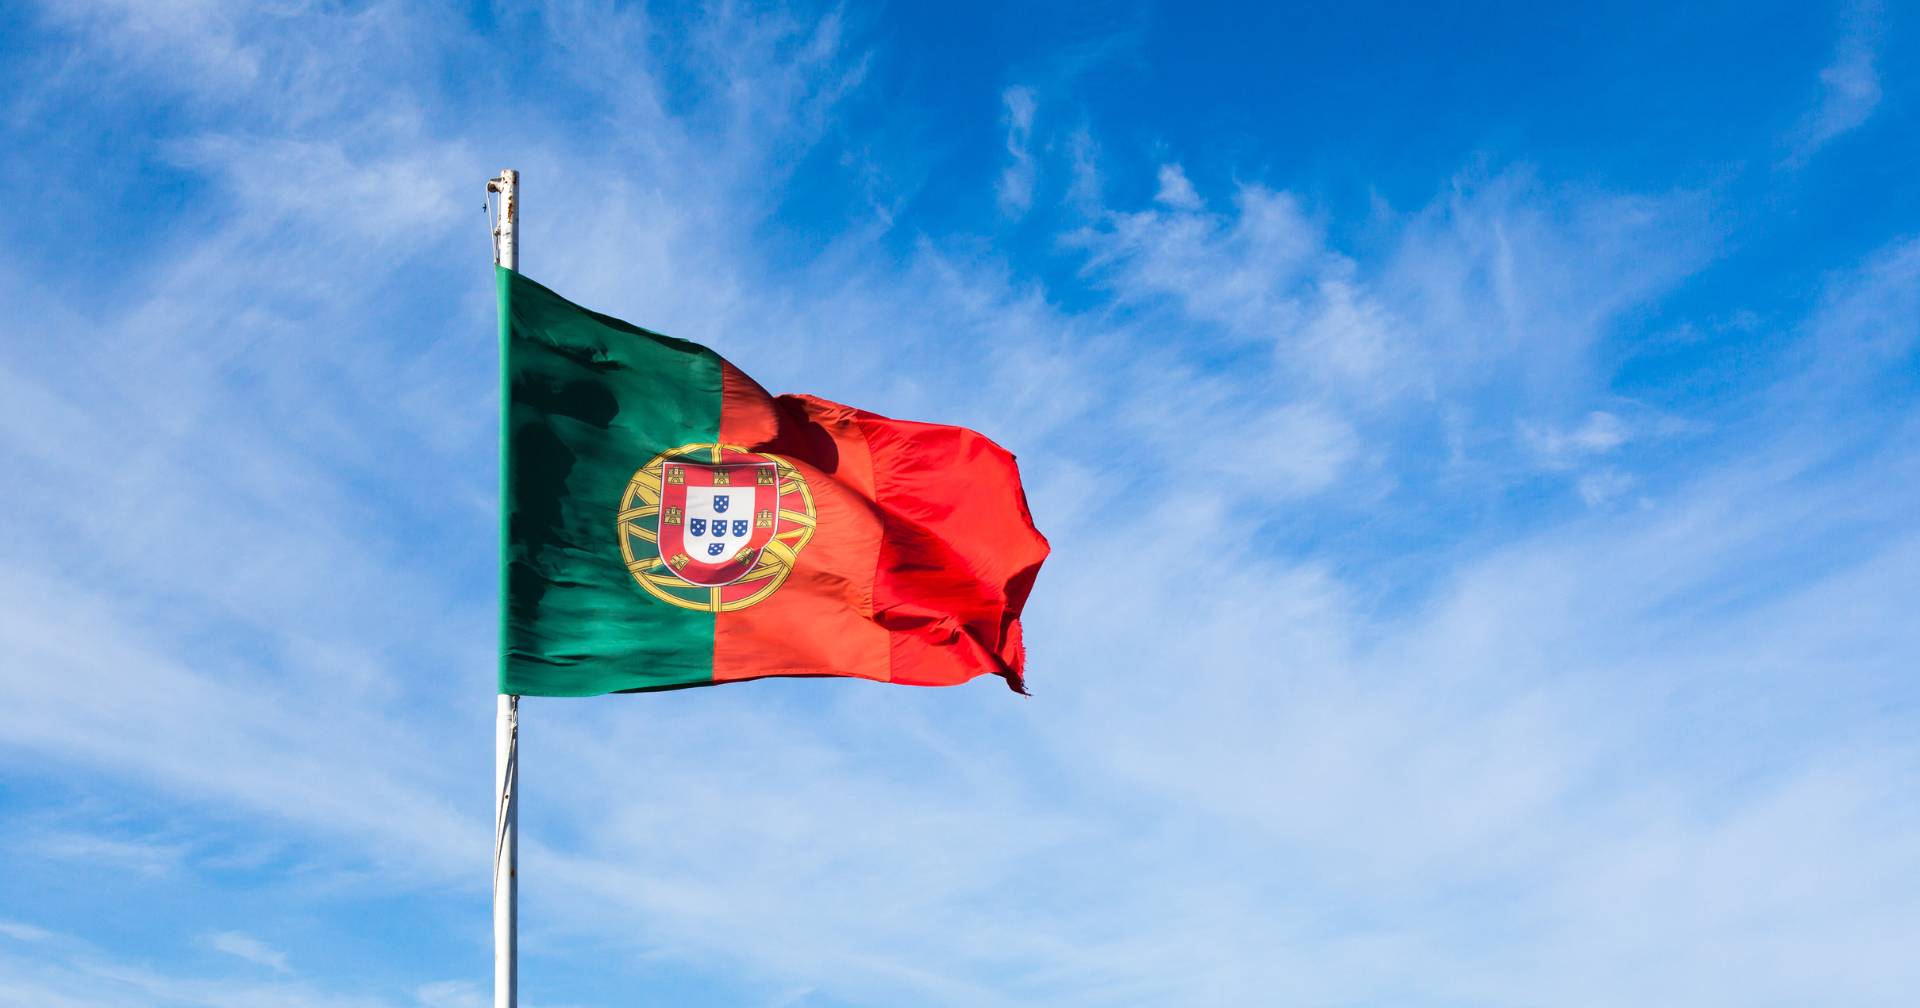 “Portugal é um exemplo”: FMI considera crescimento português modesto mas elogia postura organizacional